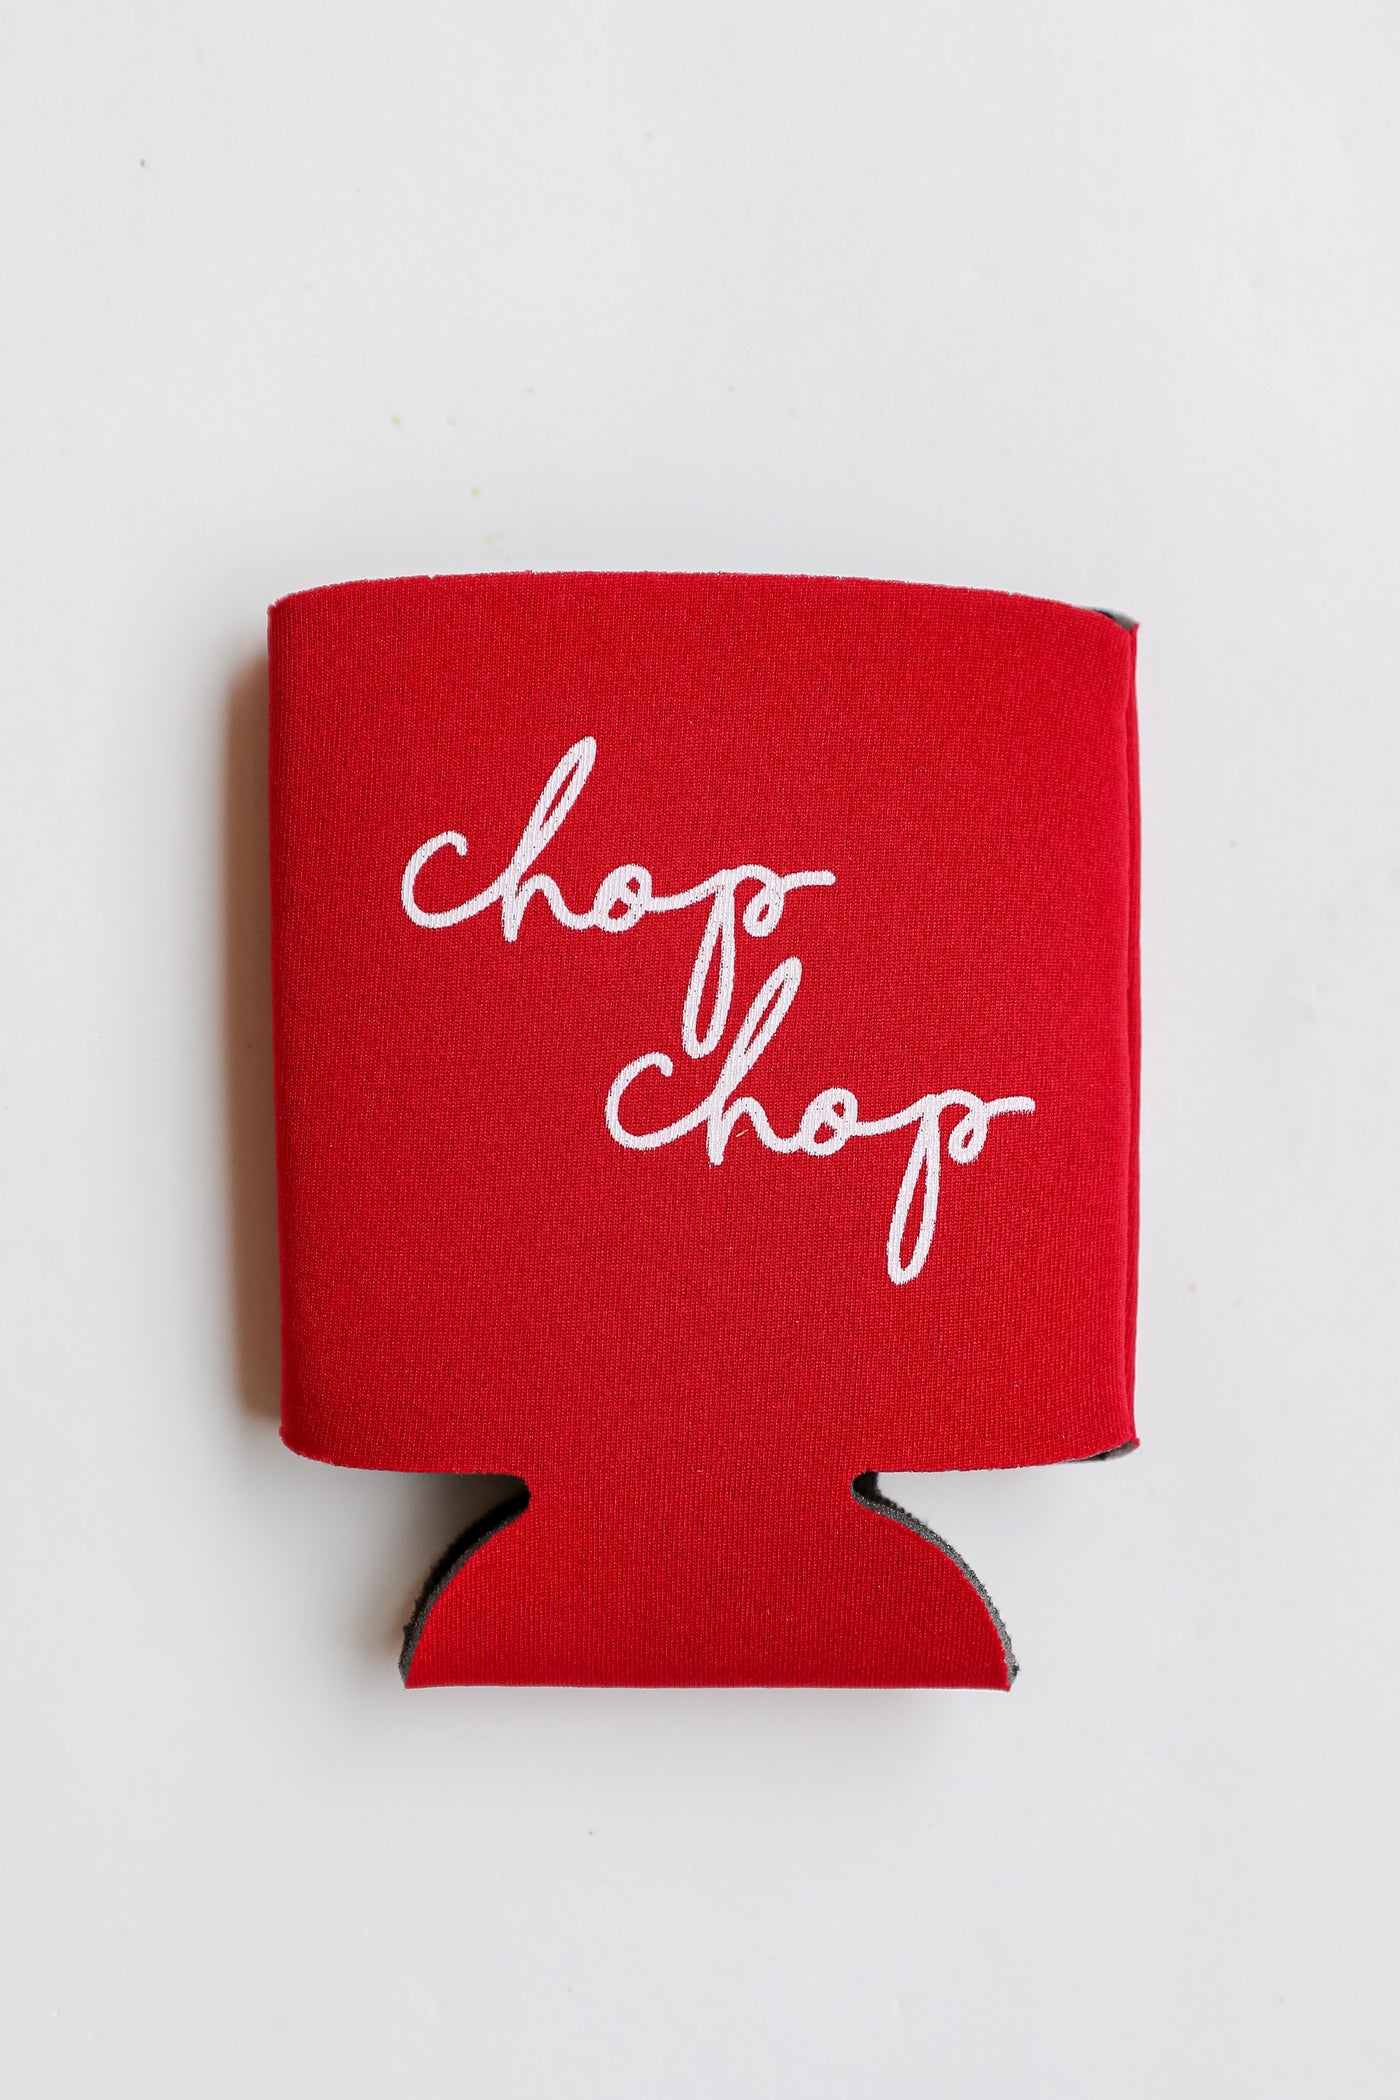 Chop Chop Script Koozie in red